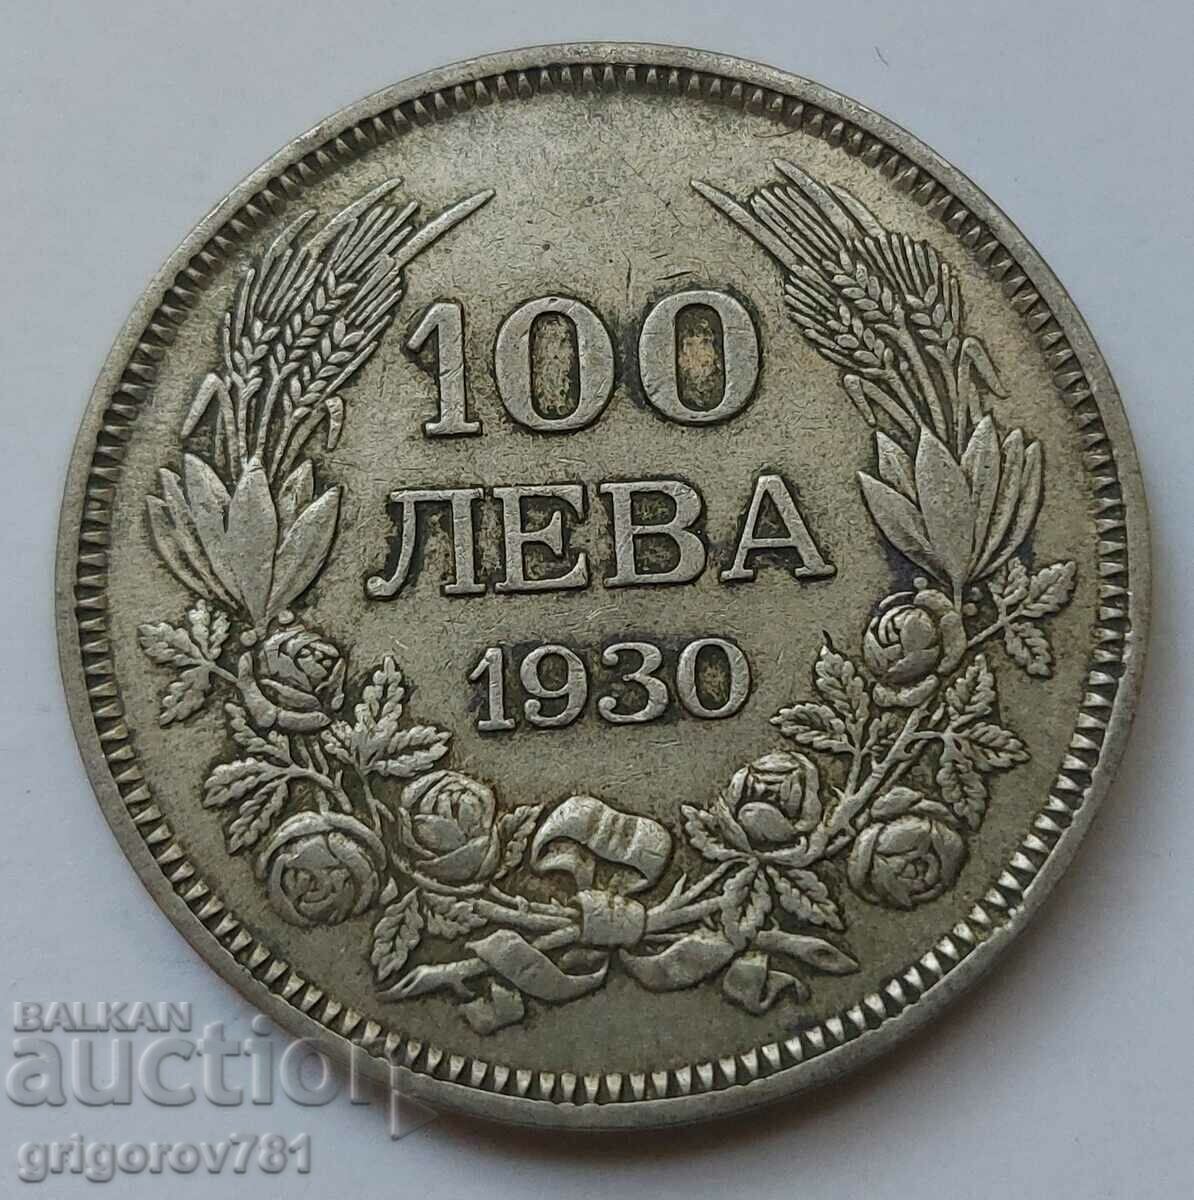 100 leva argint Bulgaria 1930 - monedă de argint #2